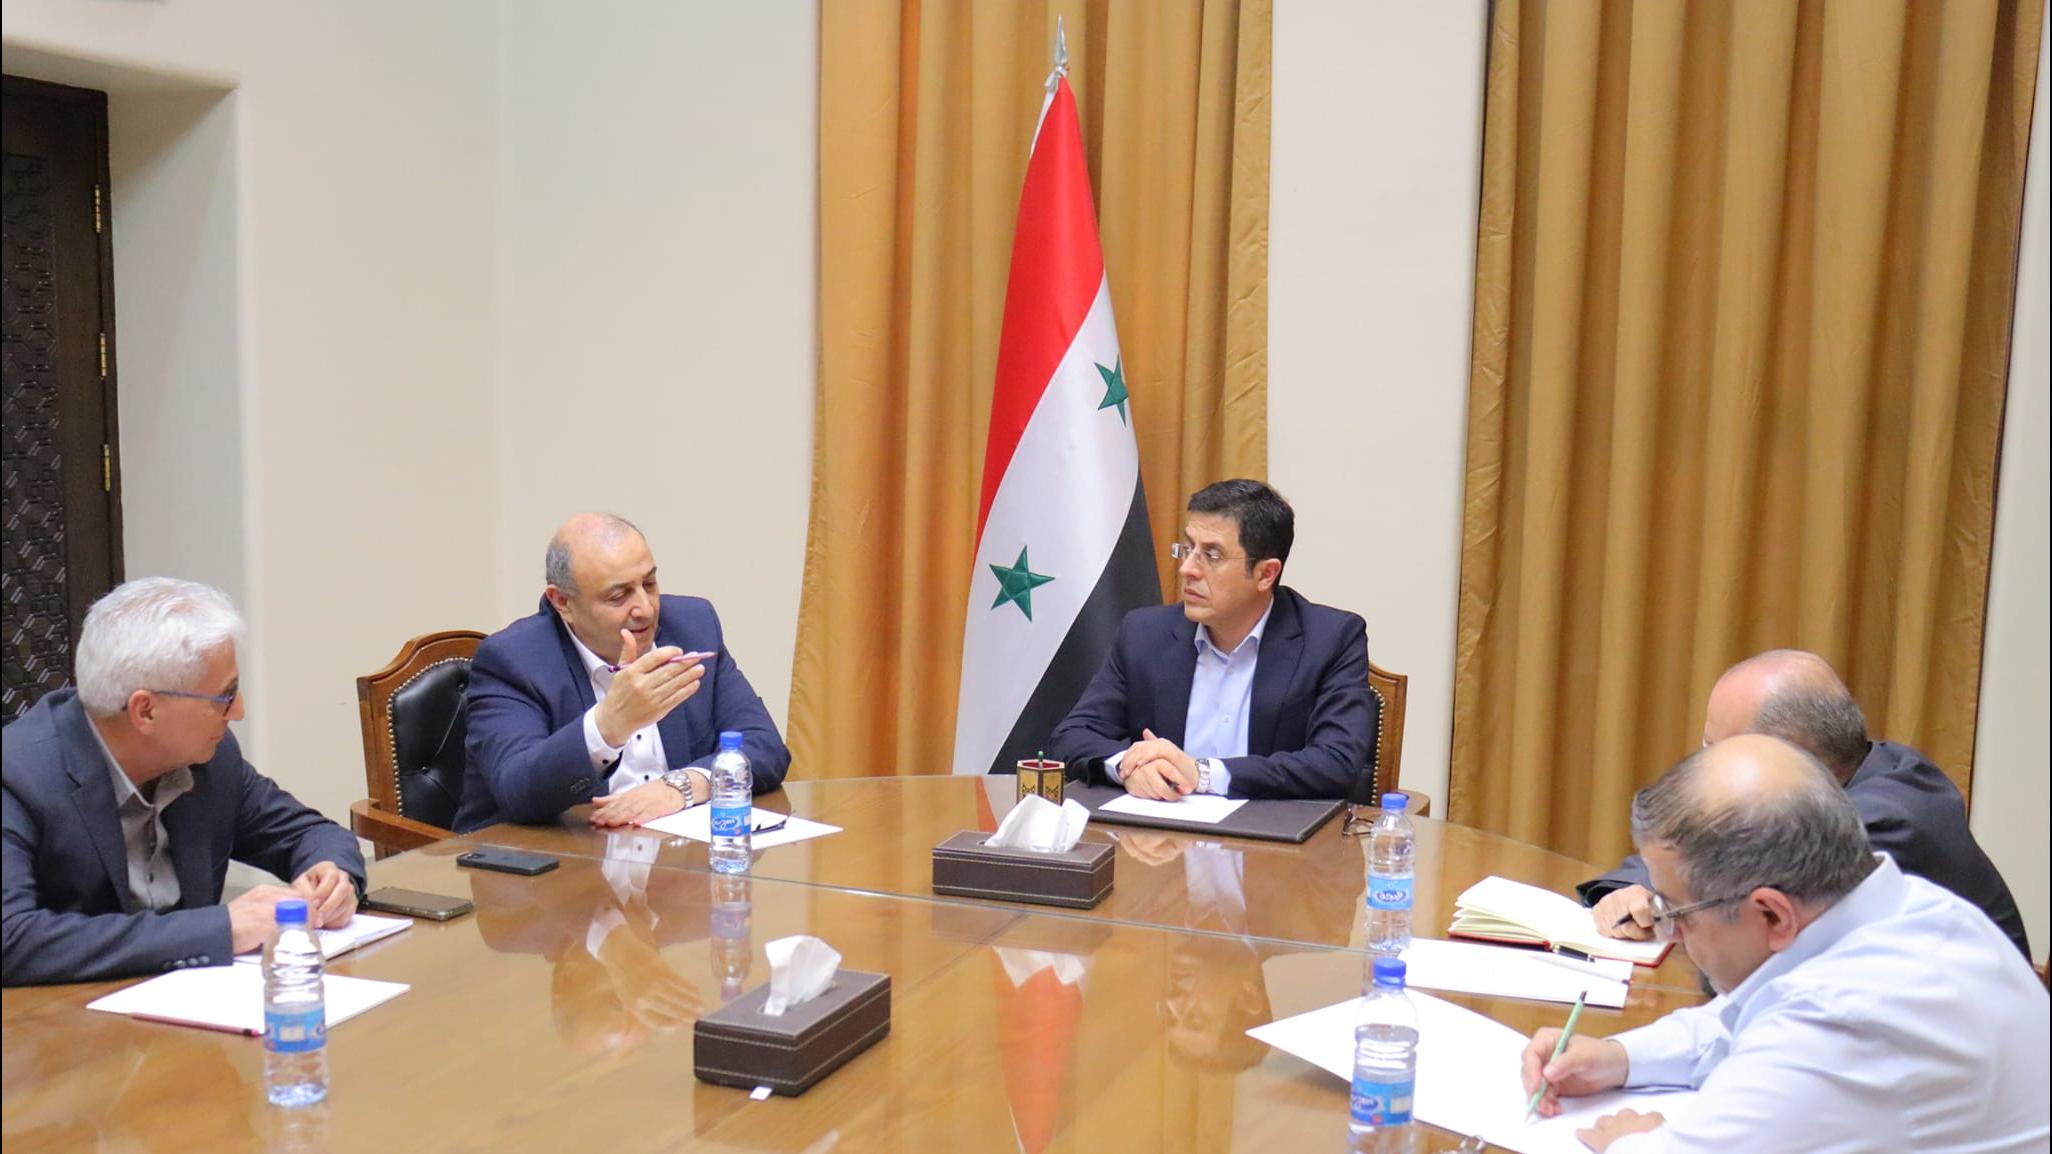 وزير الصحة يناقش وضع خطة عمل مشتركة مع ممثل شبكة الآغا خان للتنمية في سورية